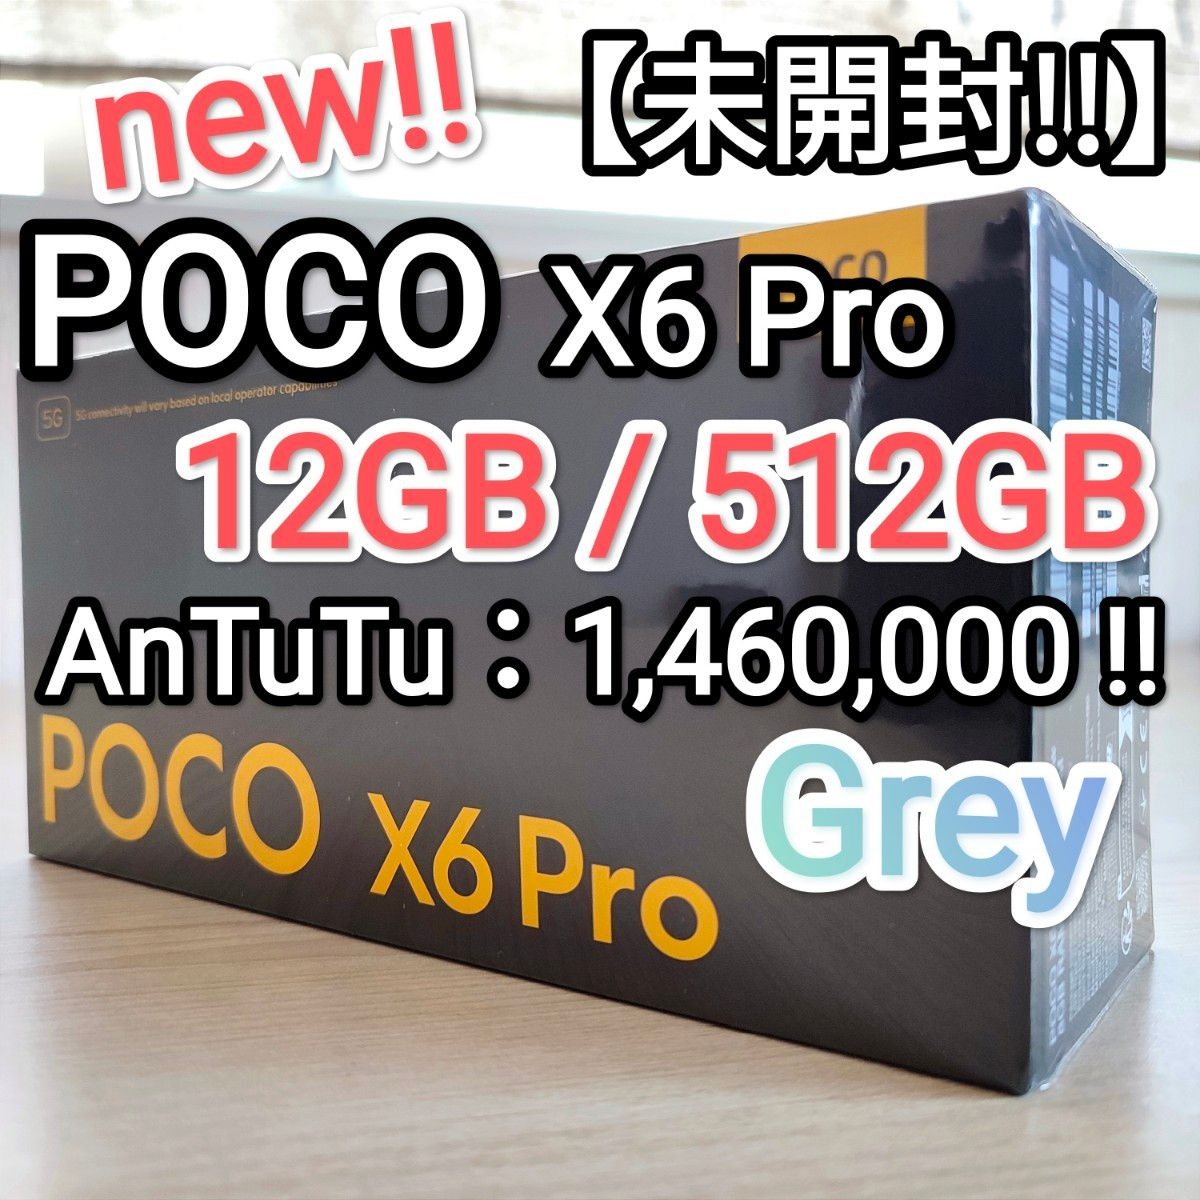 【未開封!!】Xiaomi POCO X6 Pro 5G Grey 12GB/512GB AnTuTu 1,460,000!!